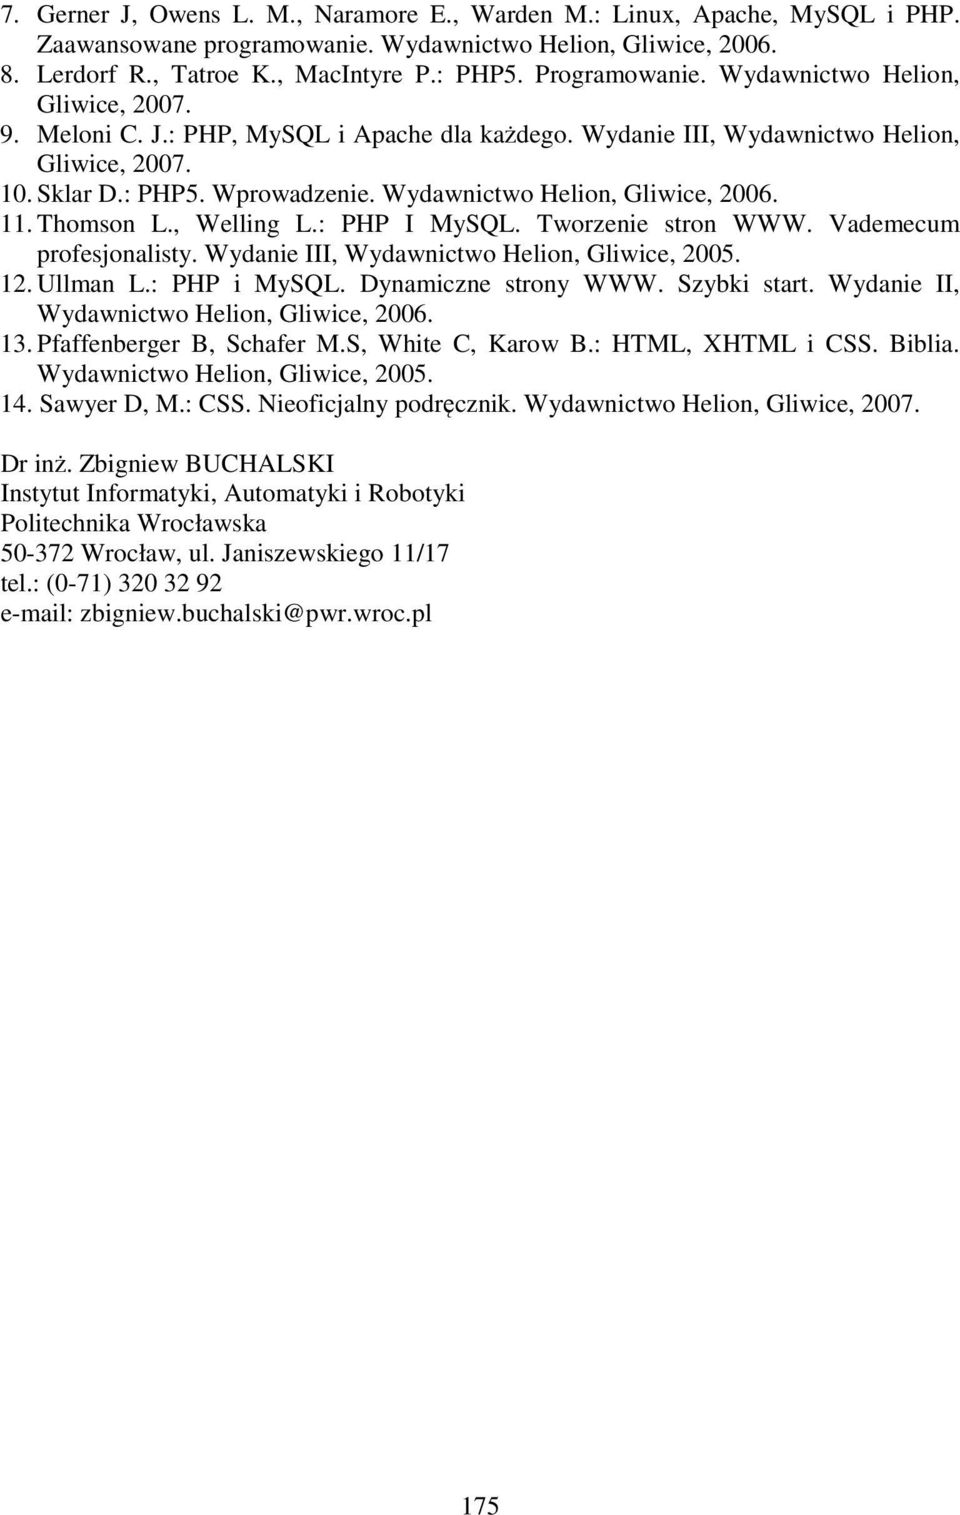 Wydawnictwo Helion, Gliwice, 2006. 11. Thomson L., Welling L.: PHP I MySQL. Tworzenie stron WWW. Vademecum profesjonalisty. Wydanie III, Wydawnictwo Helion, Gliwice, 2005. 12. Ullman L.: PHP i MySQL.